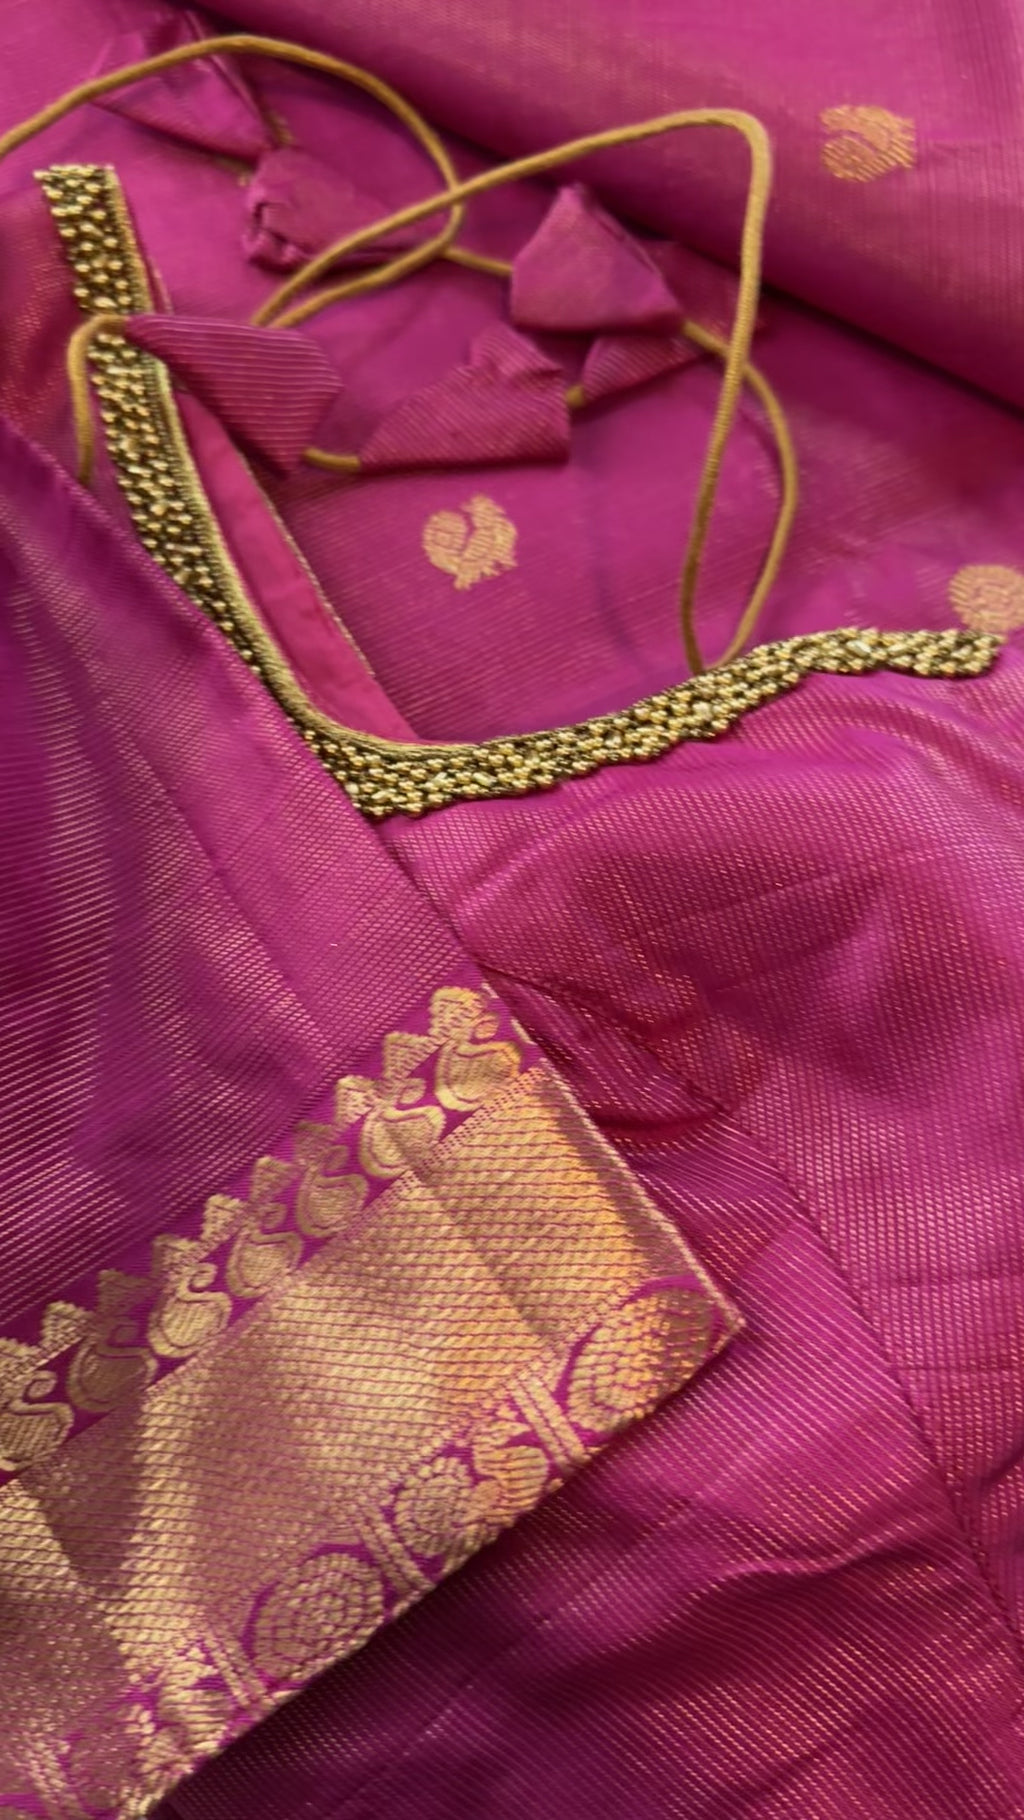 Pink vaira oosi kanchi pattu saree online shopping